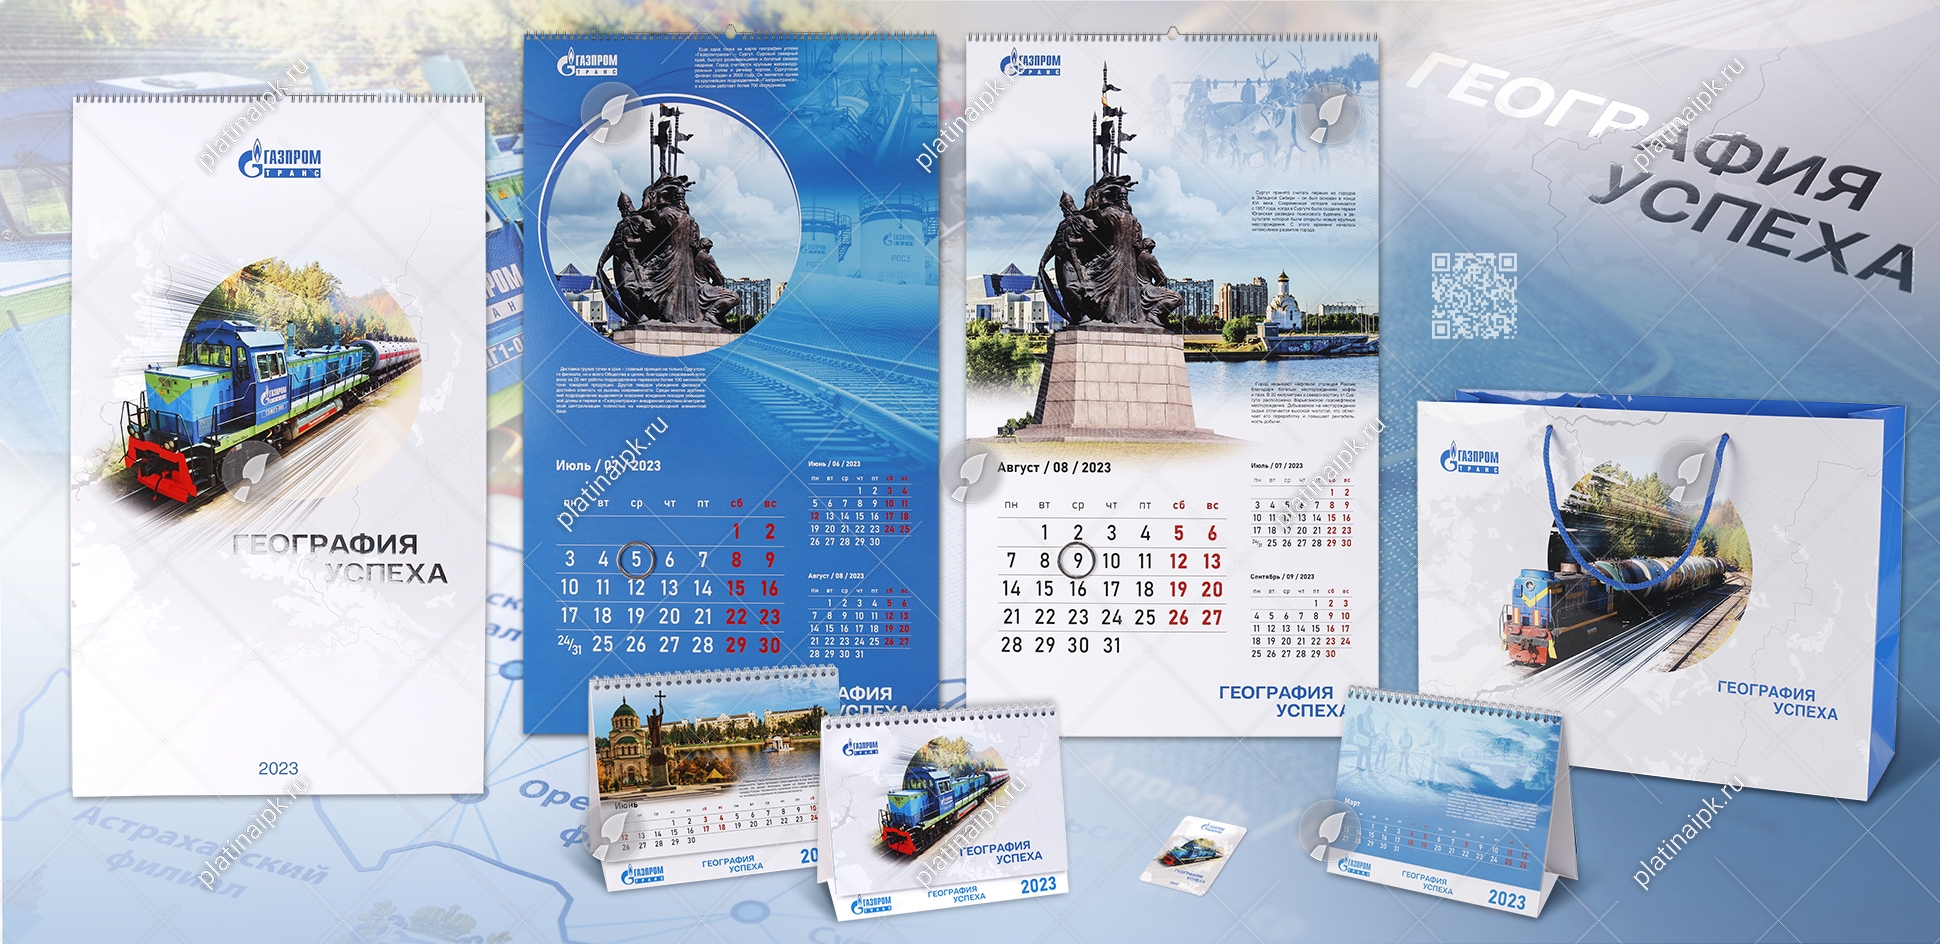 Корпоративный календарь: География успеха «Газпромтранс» — ИПК Platina